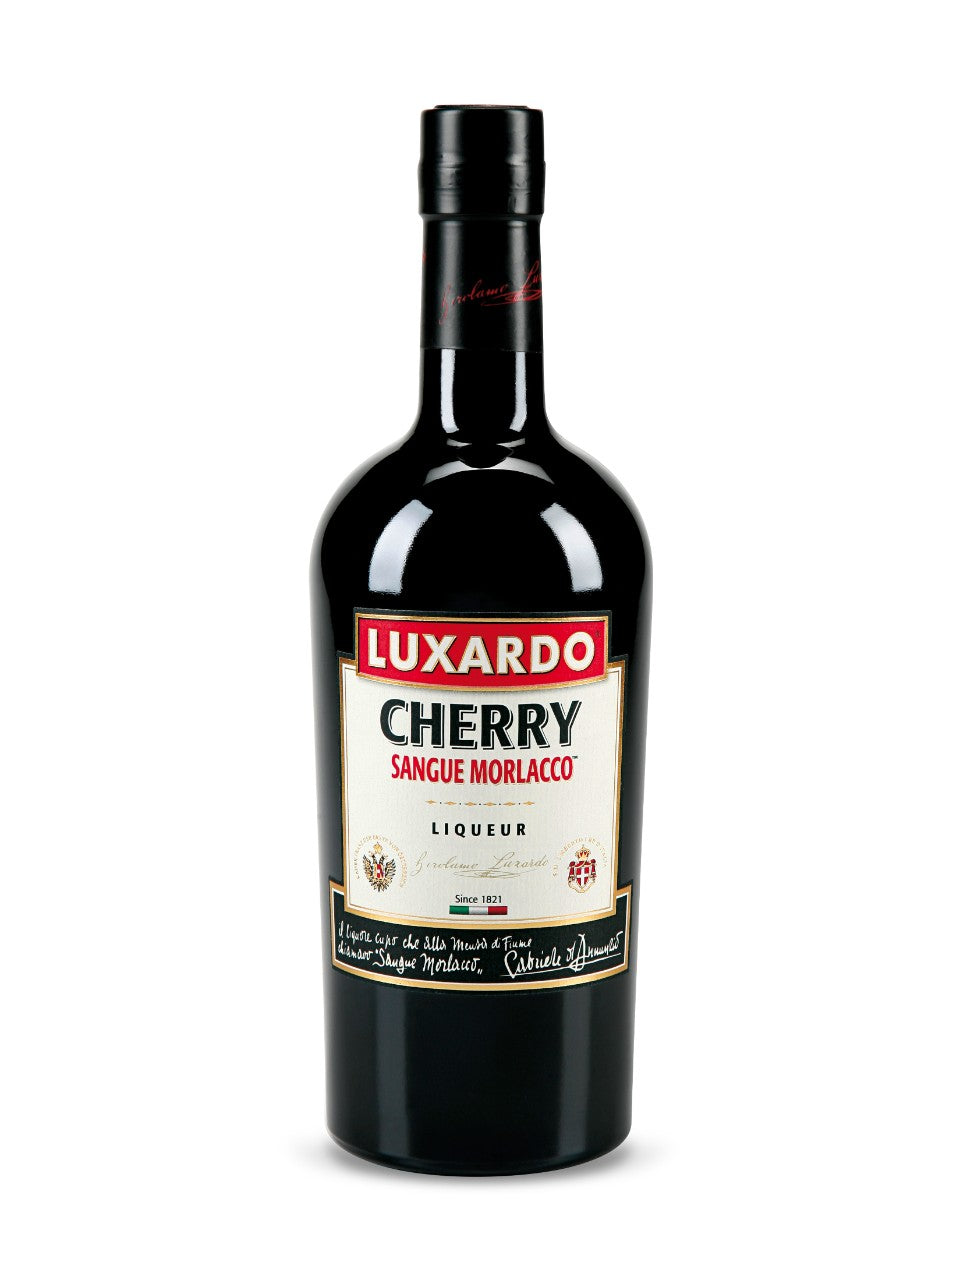 Luxardo Cherry Liqueur Sangue Morlacco 750 mL bottle